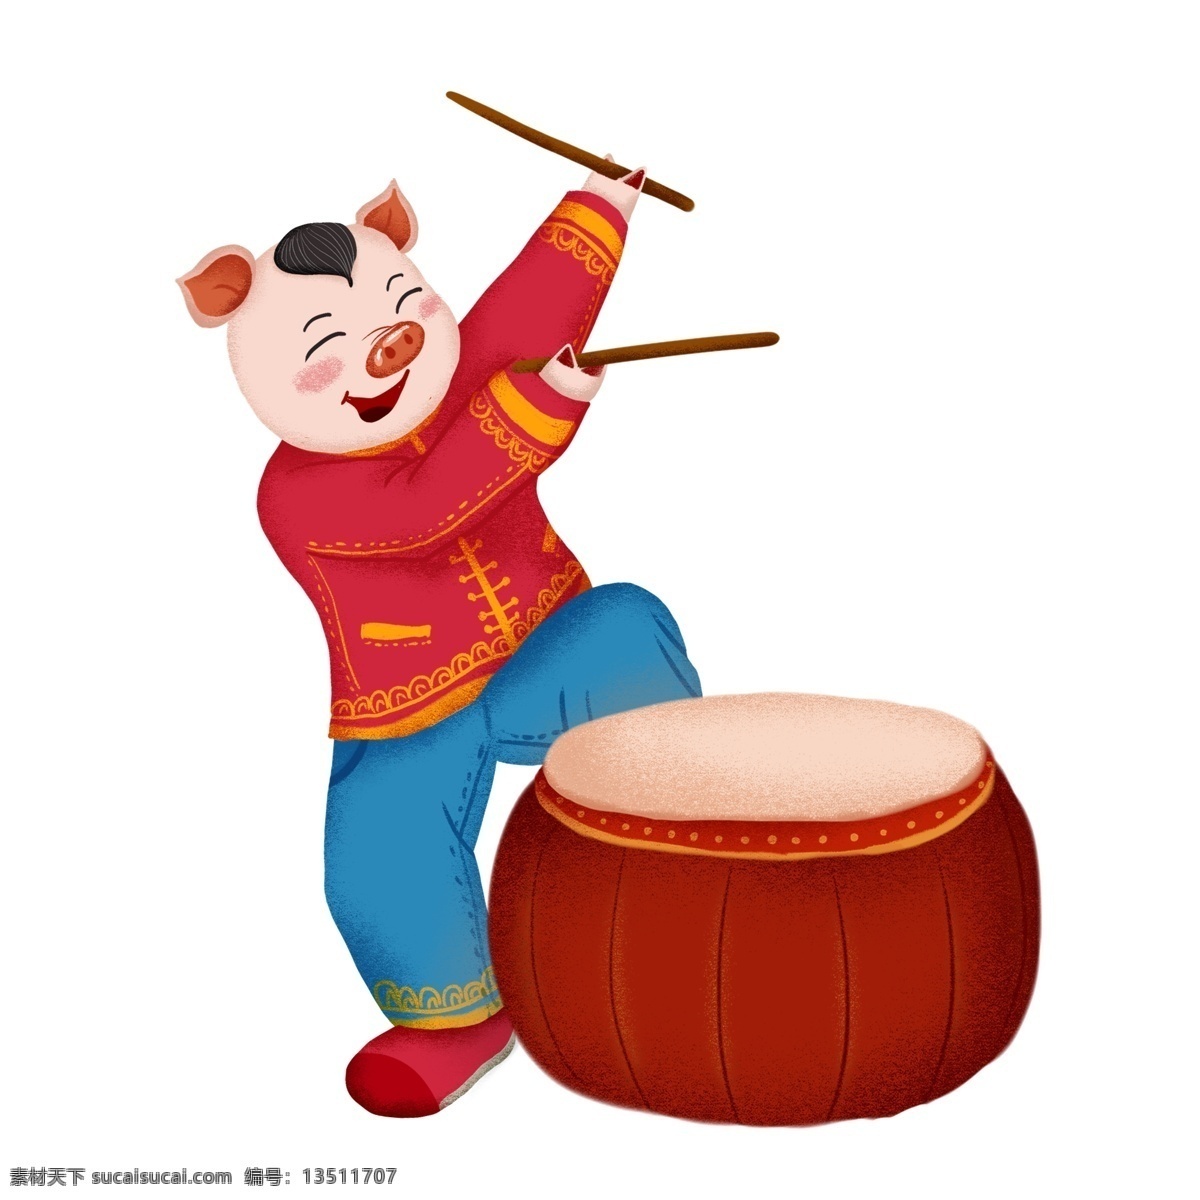 2019 猪年 春节 敲锣打鼓 元素 可爱 红色 喜庆 节日 卡通 新年 过年 庆祝